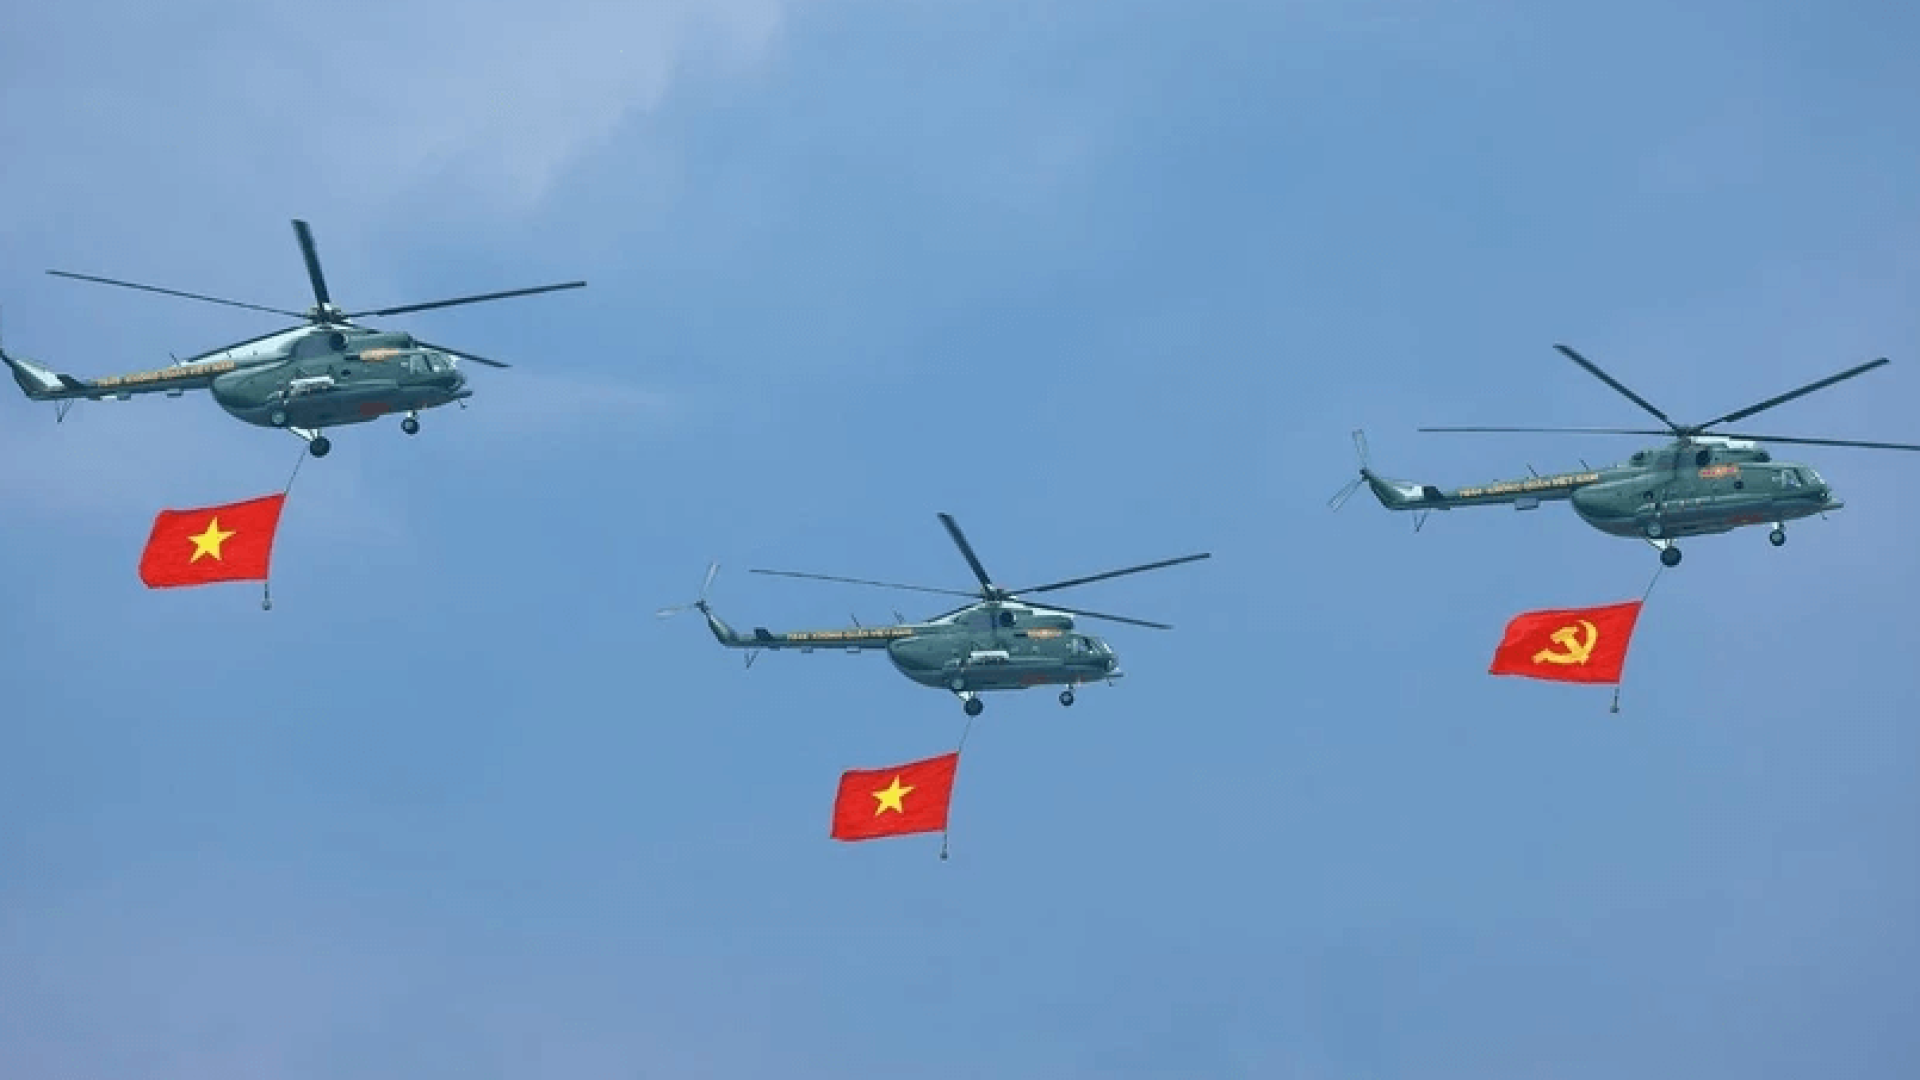 Chiến thắng Điện Biên Phủ - Vẹn nguyên niềm tự hào của nhân dân Việt Nam